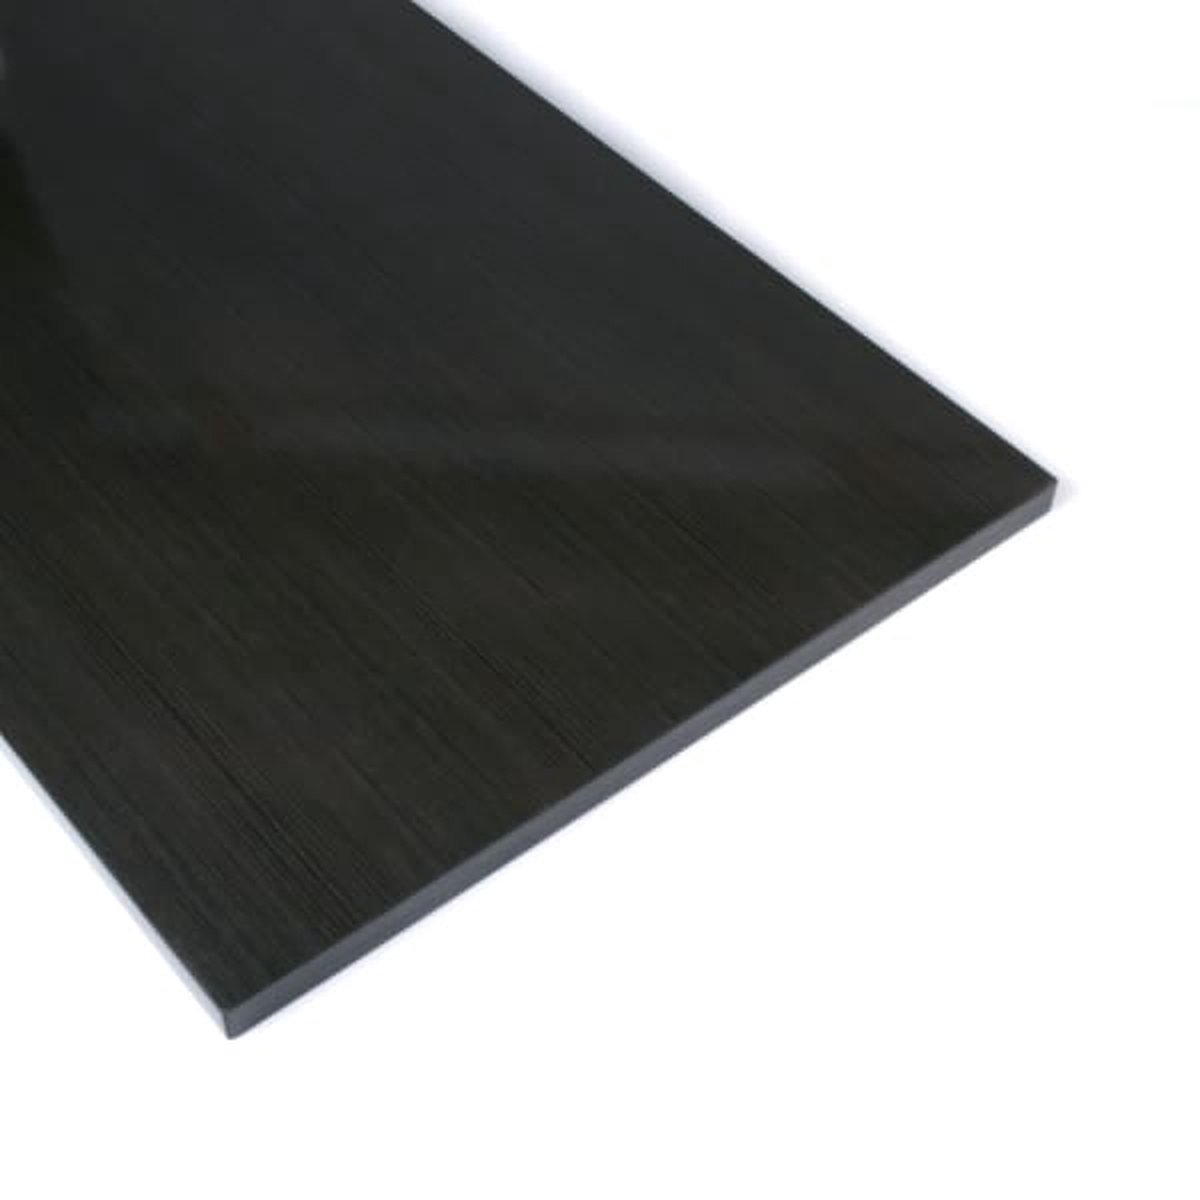 10 STUKS! (Boeken)plank / Schap Antraciet/Houtnerf (40cmx120cm) Melamine,MDF.